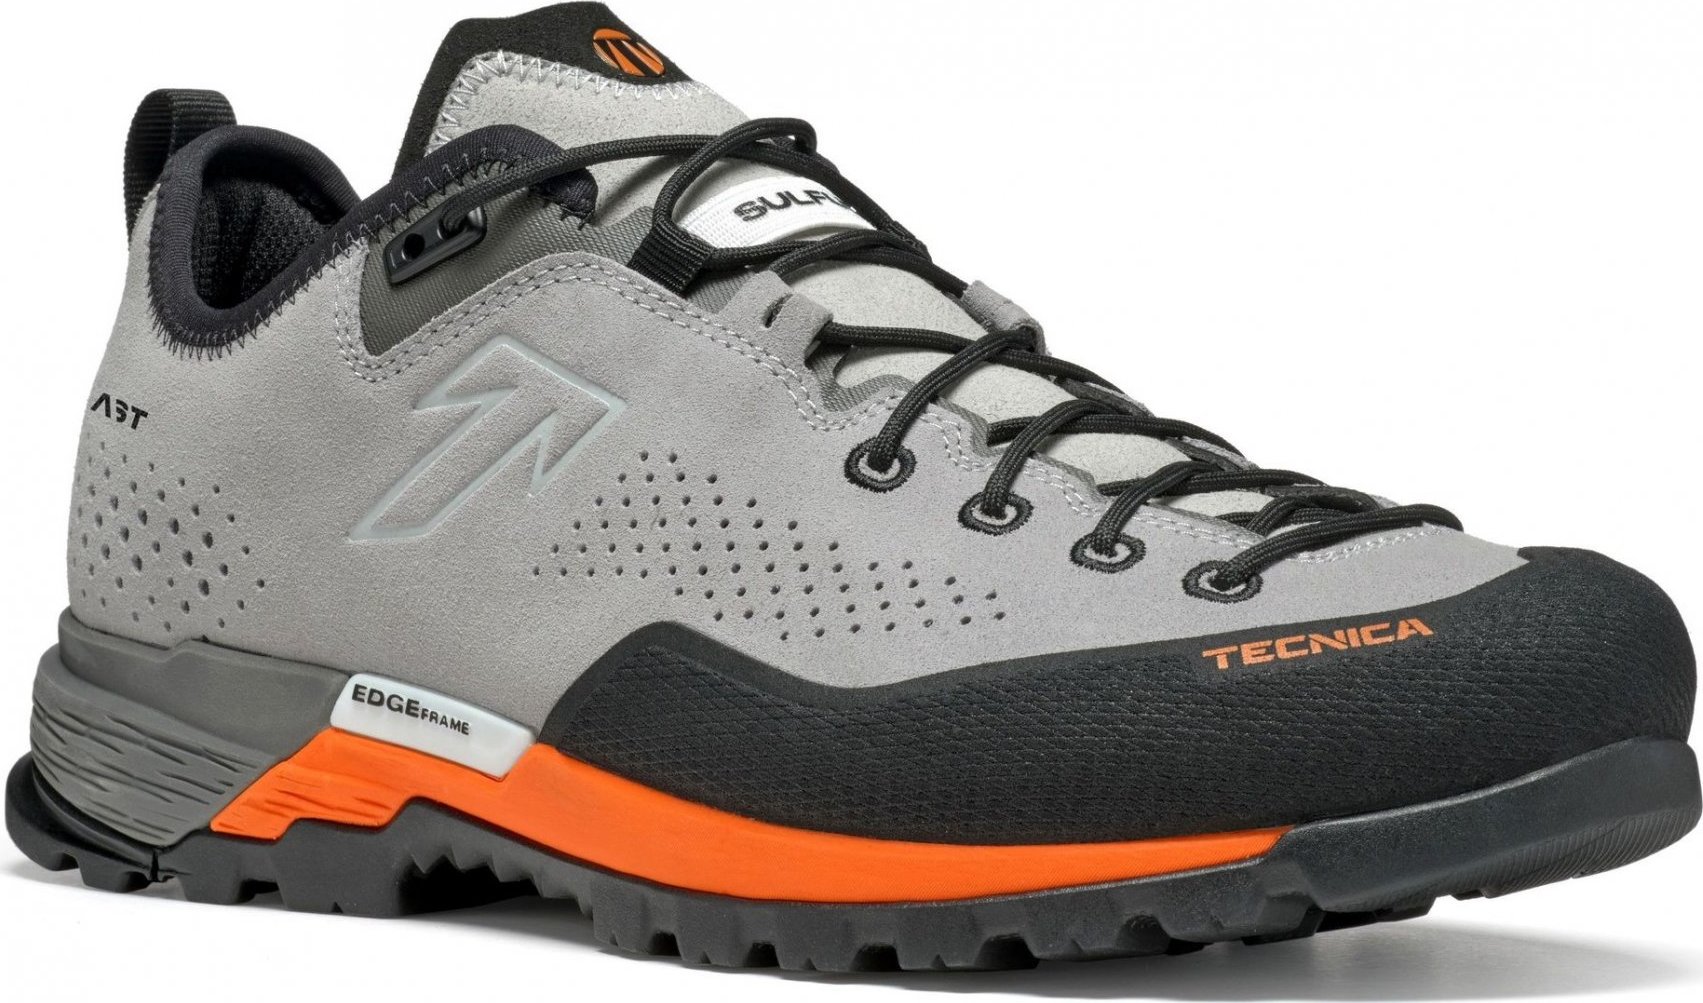 Pánské trekové boty TECNICA Sulfur Ms, 001 soft grey/ultra orange Velikost: 41 1/2